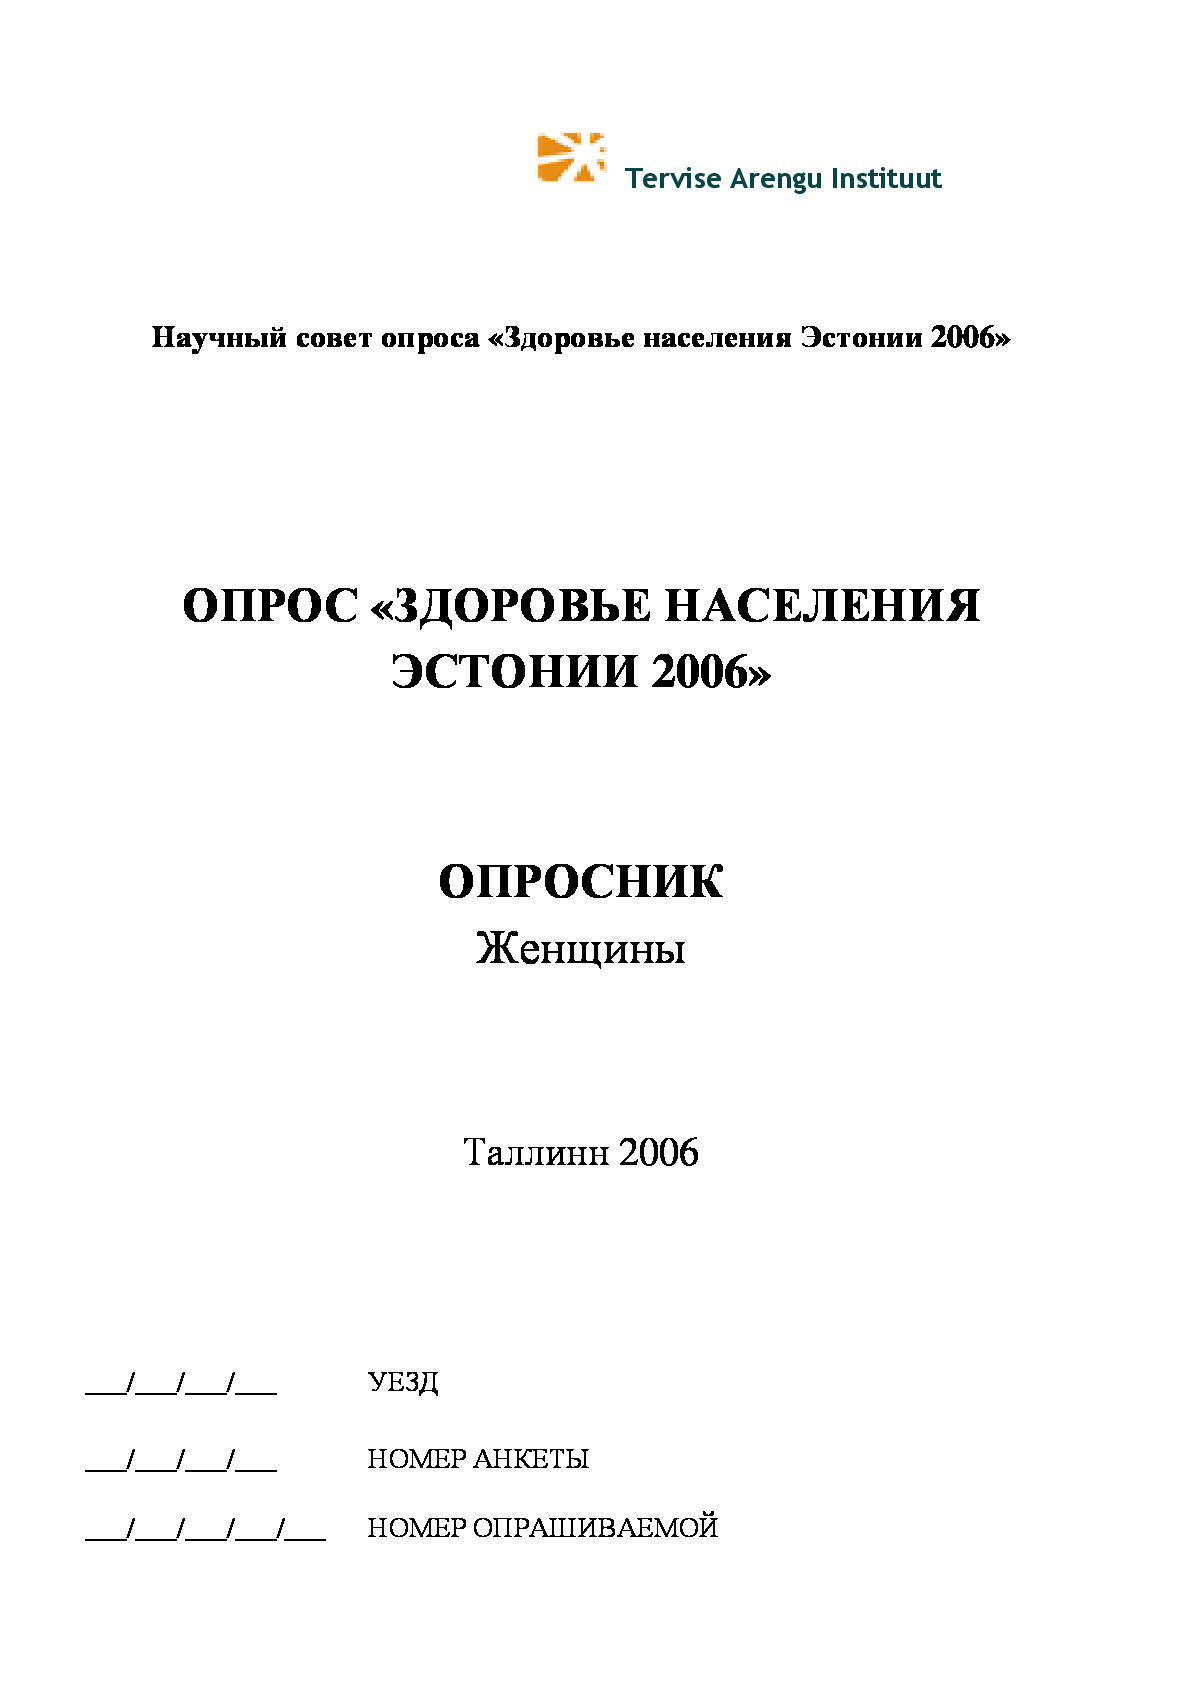 Eesti Terviseuuring 2006 naiste ankeet vene keeles